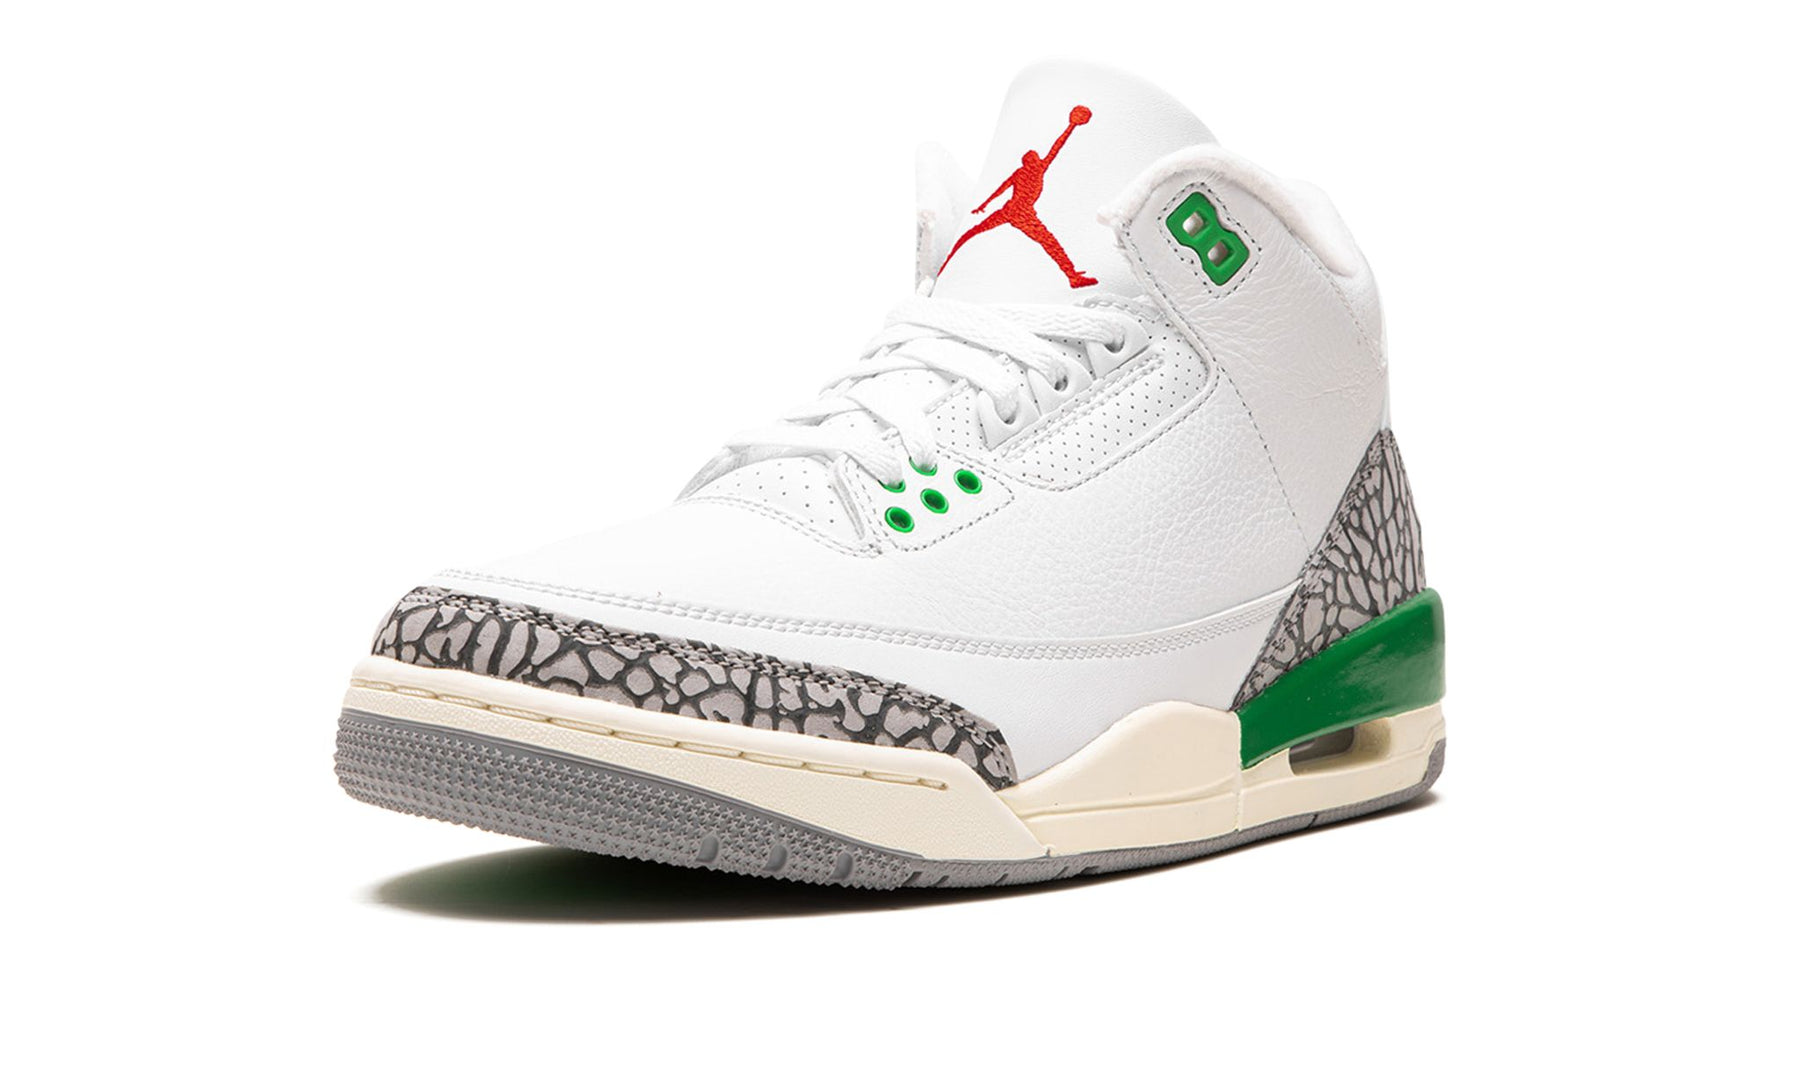 Air Jordan 3 WMNS "Lucky Green"